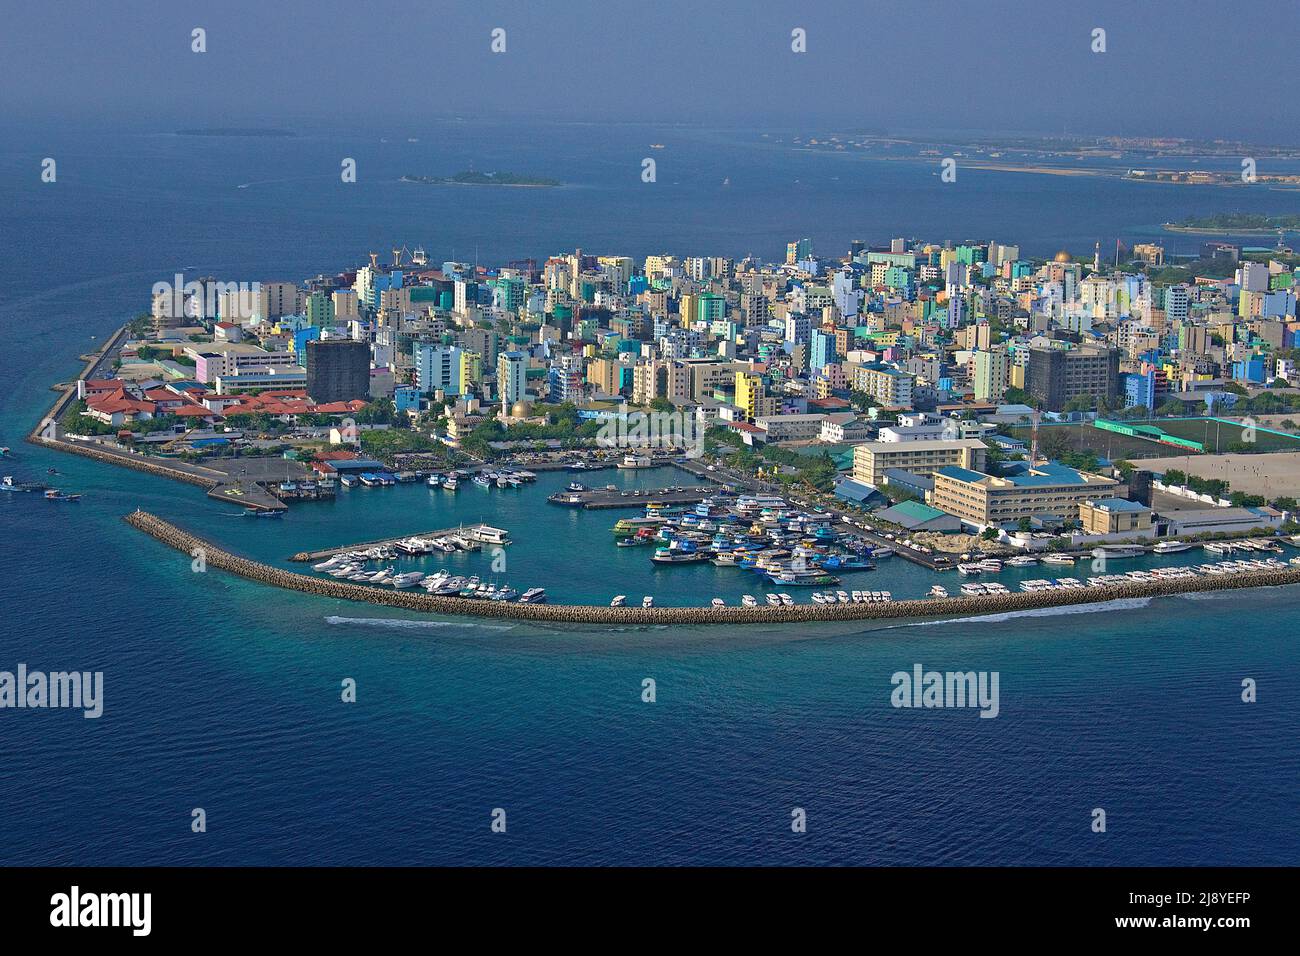 Vue aérienne de Malé, capitale des Maldives, océan Indien, Asie Banque D'Images